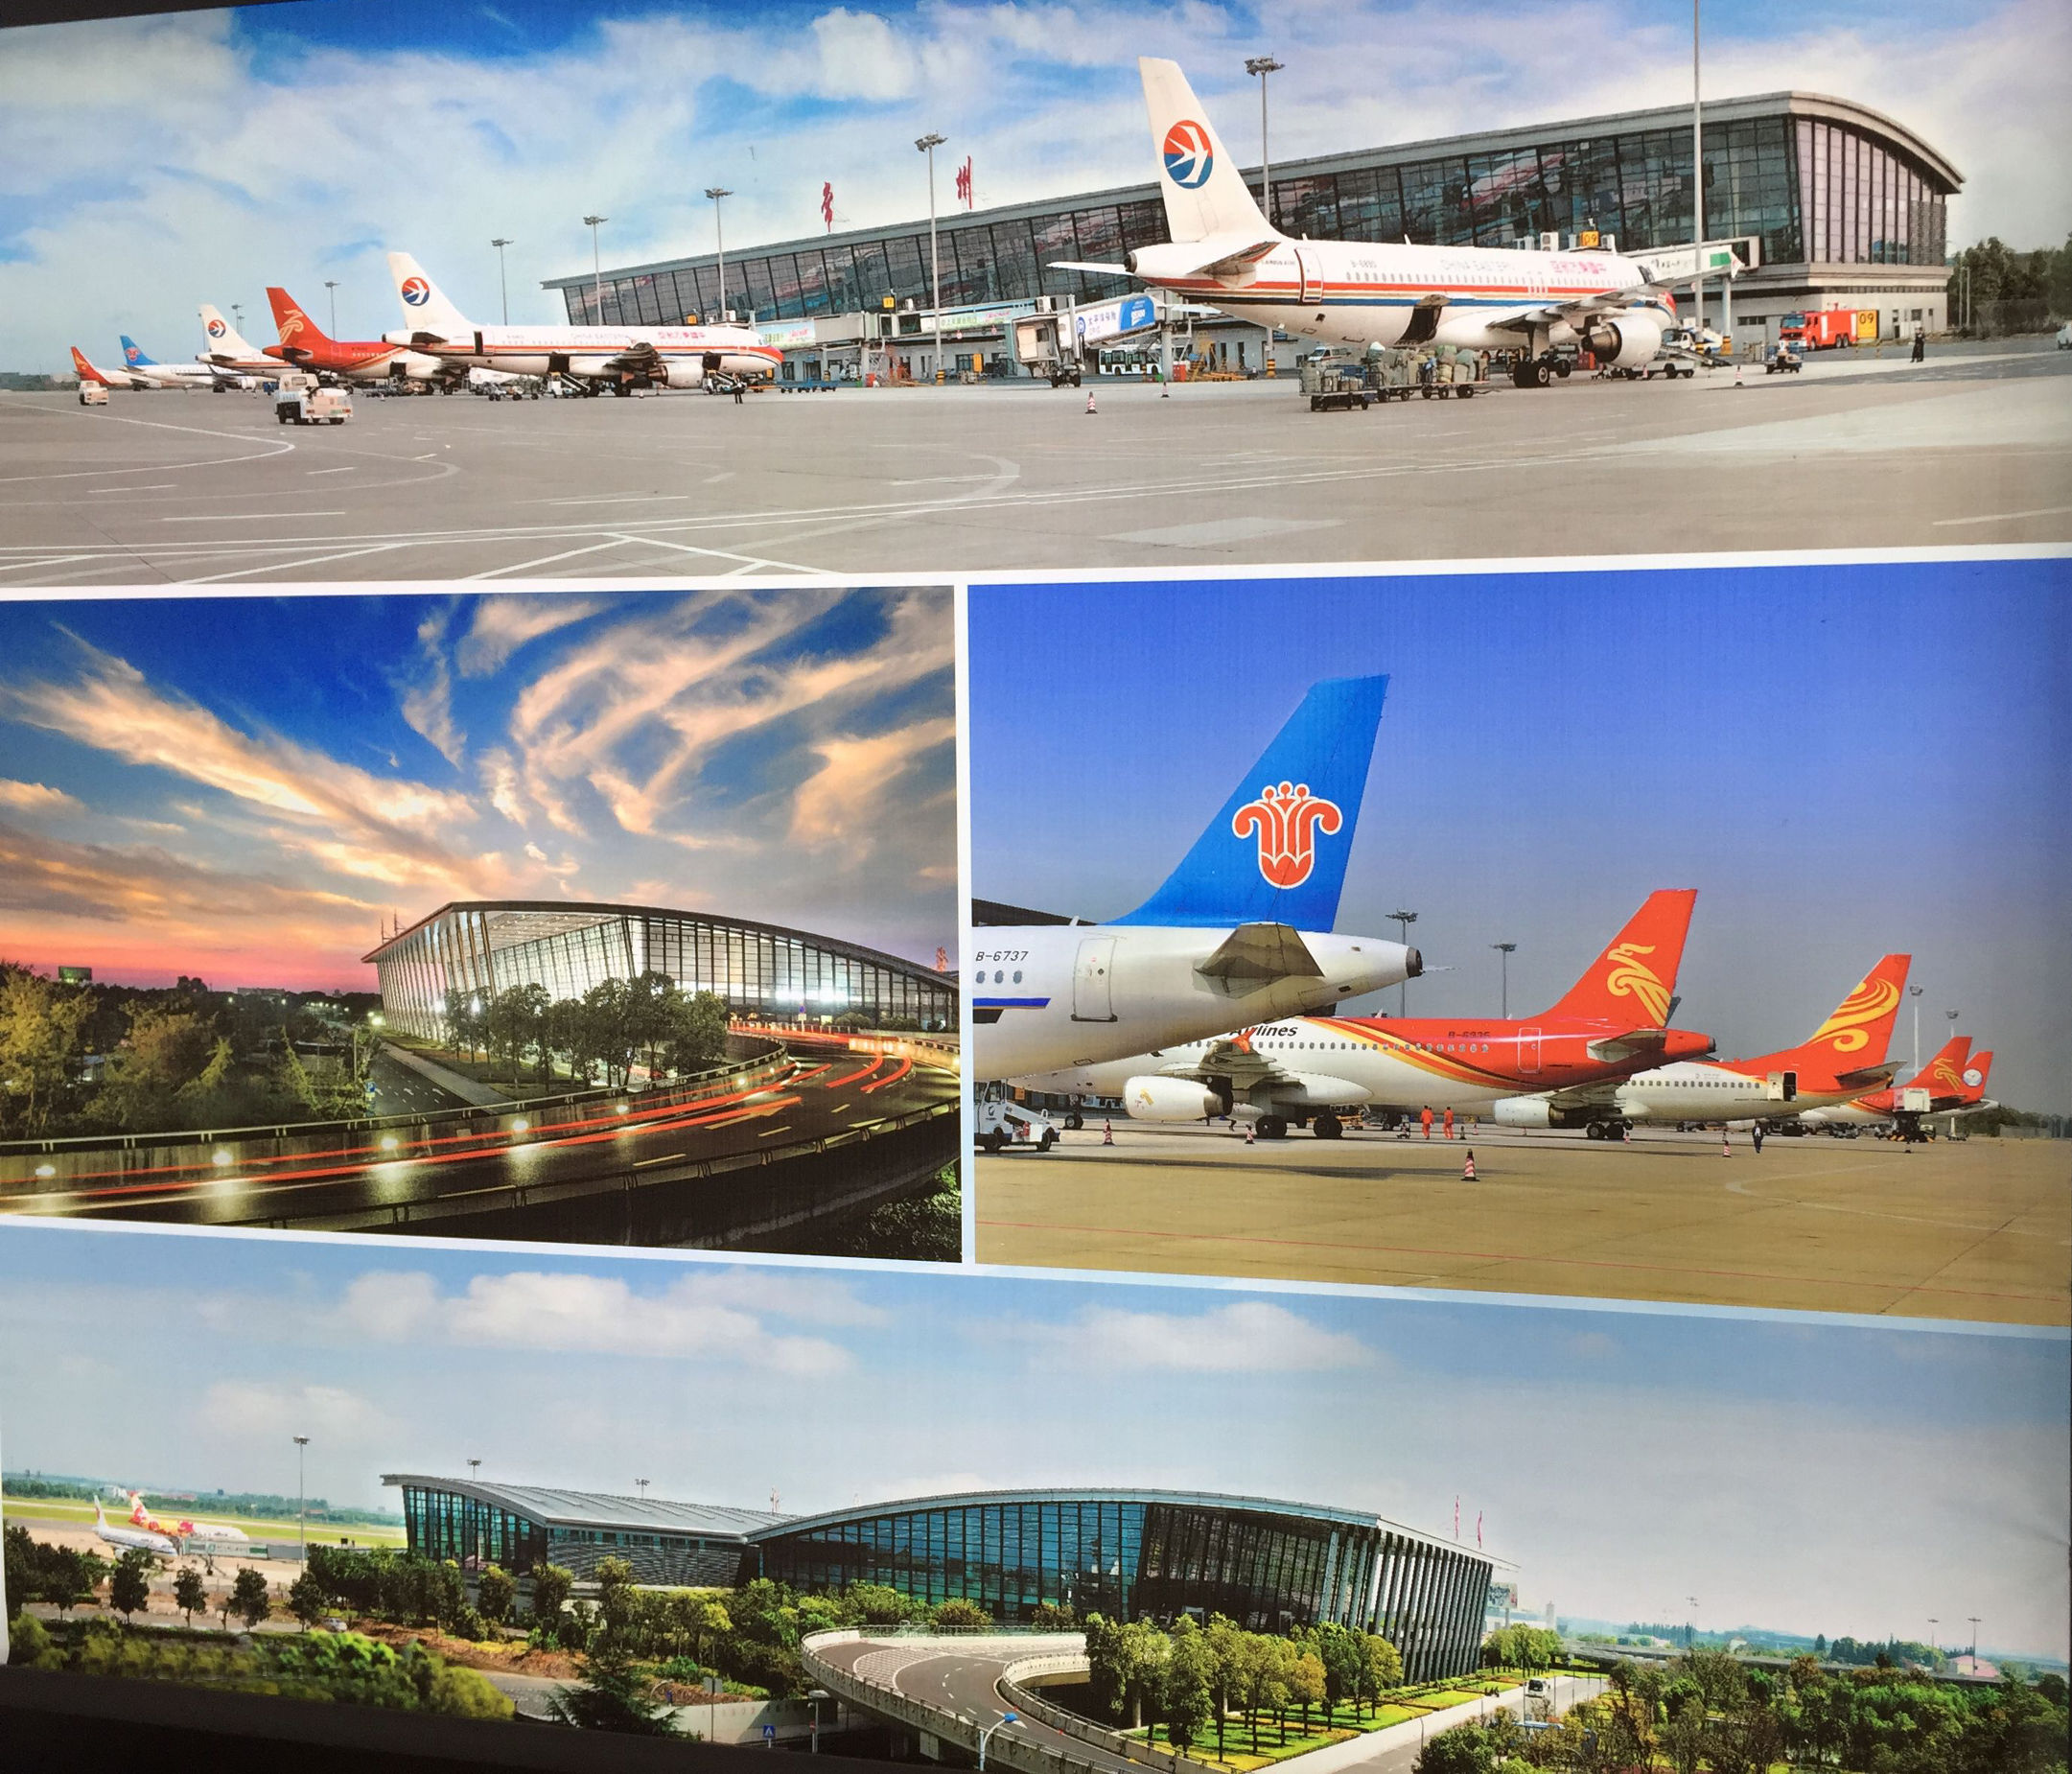 江苏9个国际机场图片